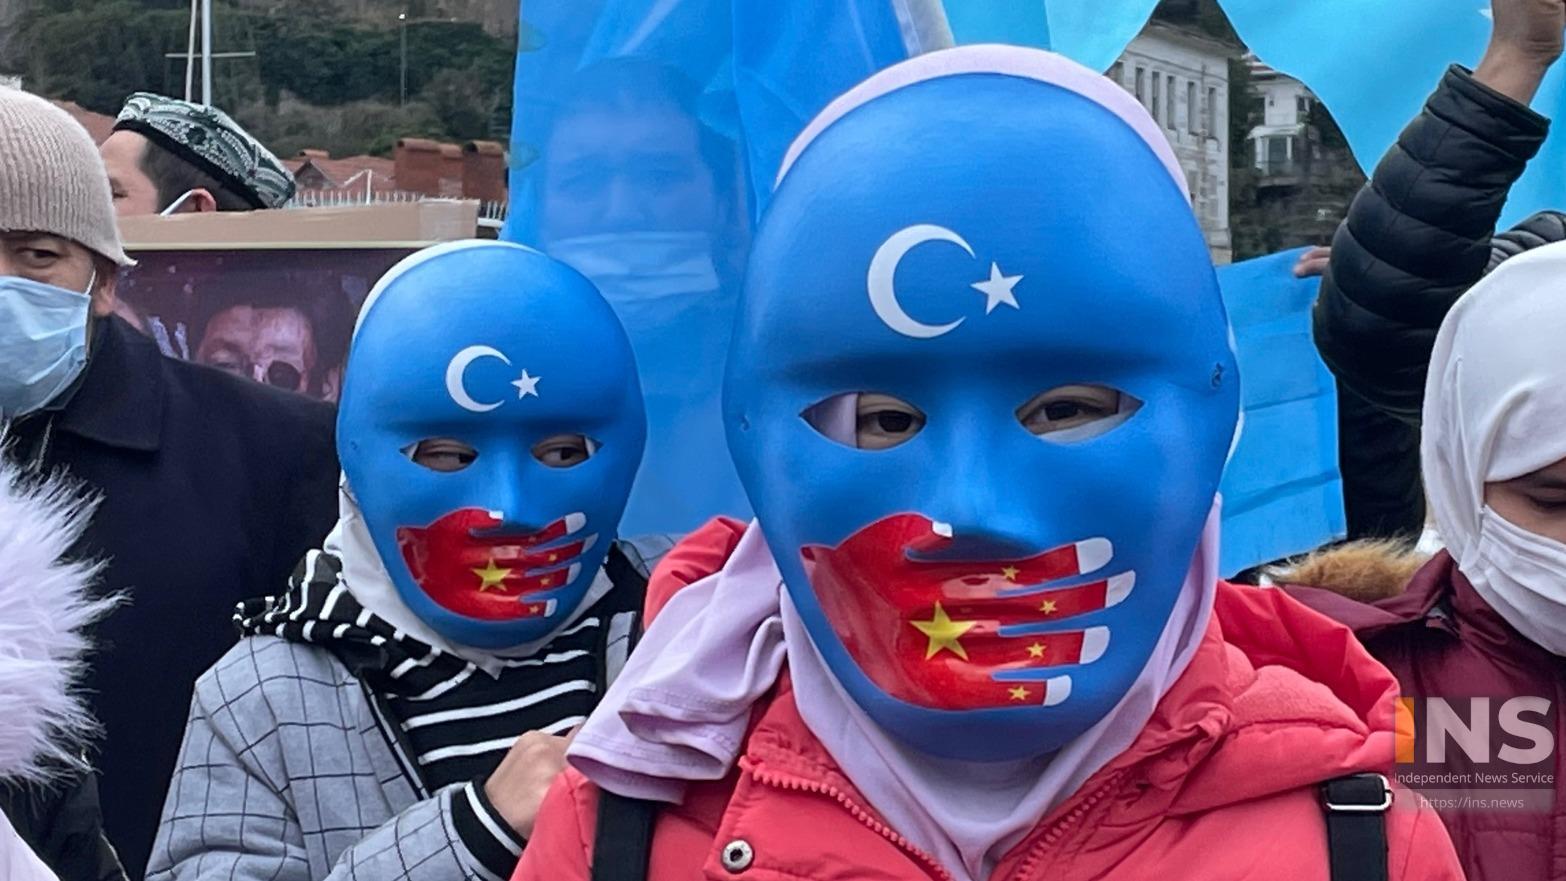 “उइघुर समुदायप्रति चीनको व्यवहार मानवता विरुद्ध अपराध हुनसक्छ,” राष्ट्रसंघीय मानव अधिकार प्रमुख ब्याच्लेट